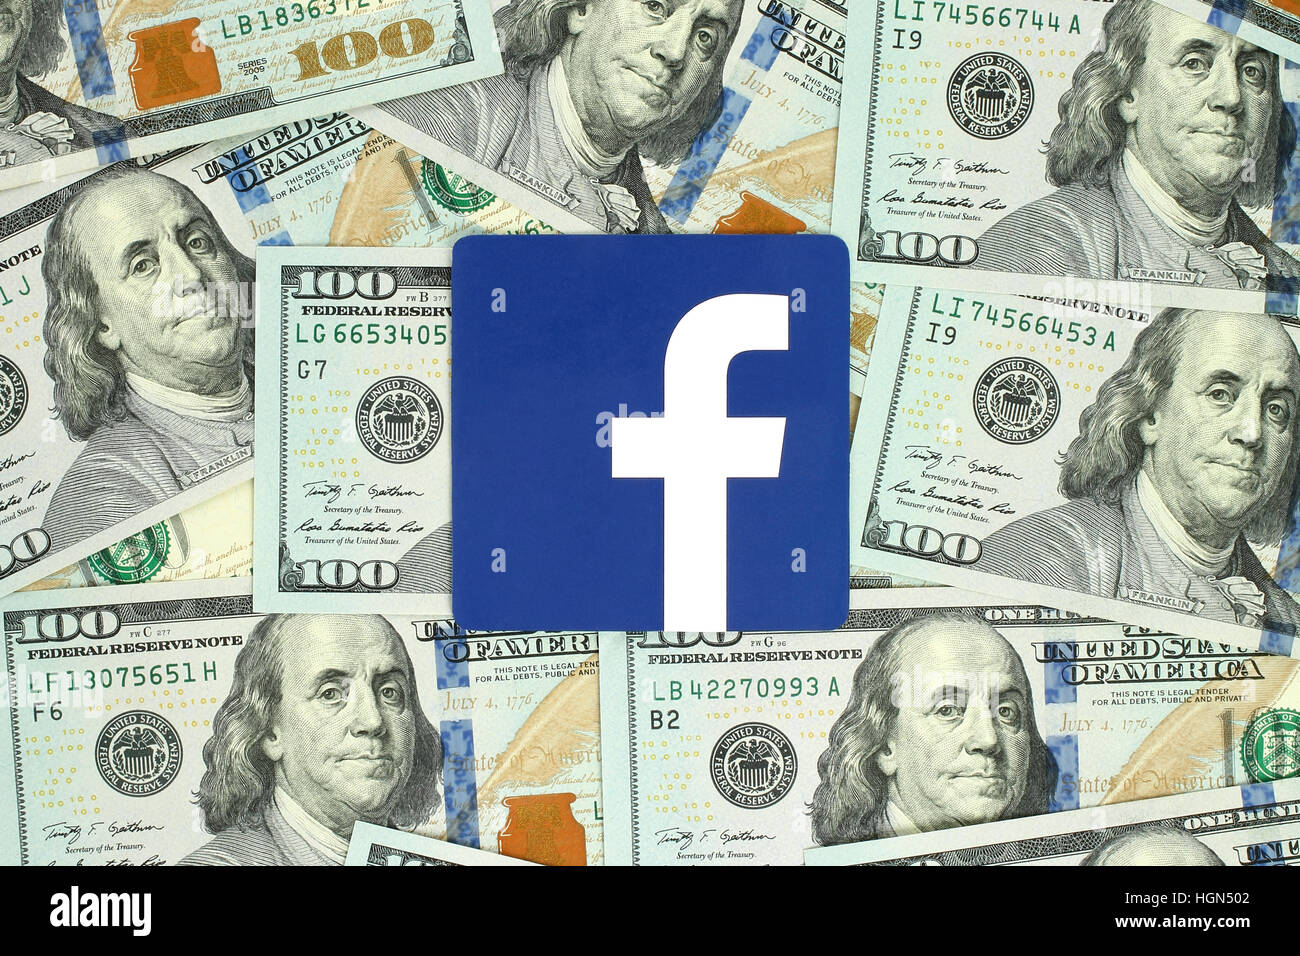 Kiew, Ukraine - 13. Juni 2016: Facebook Logo Zeichen auf Papier gedruckt und auf Geld Hintergrund platziert. Facebook ist eine bekannte Sozialnetzwerkanschlußservice. Stockfoto